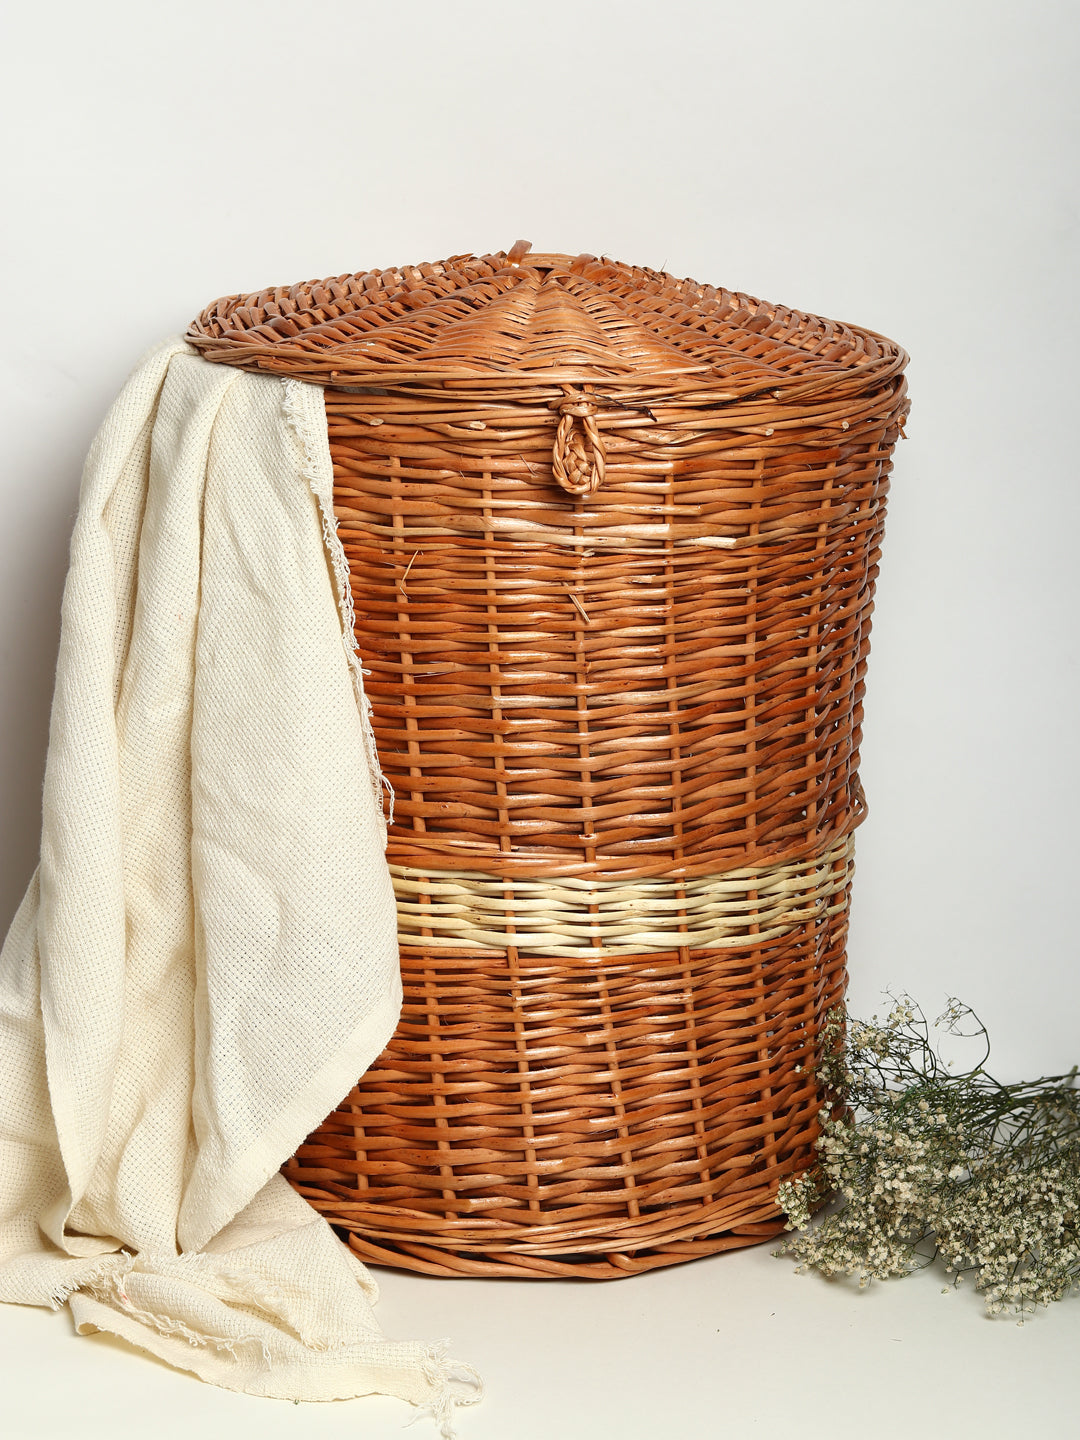 Wicker Laundry Baskets 